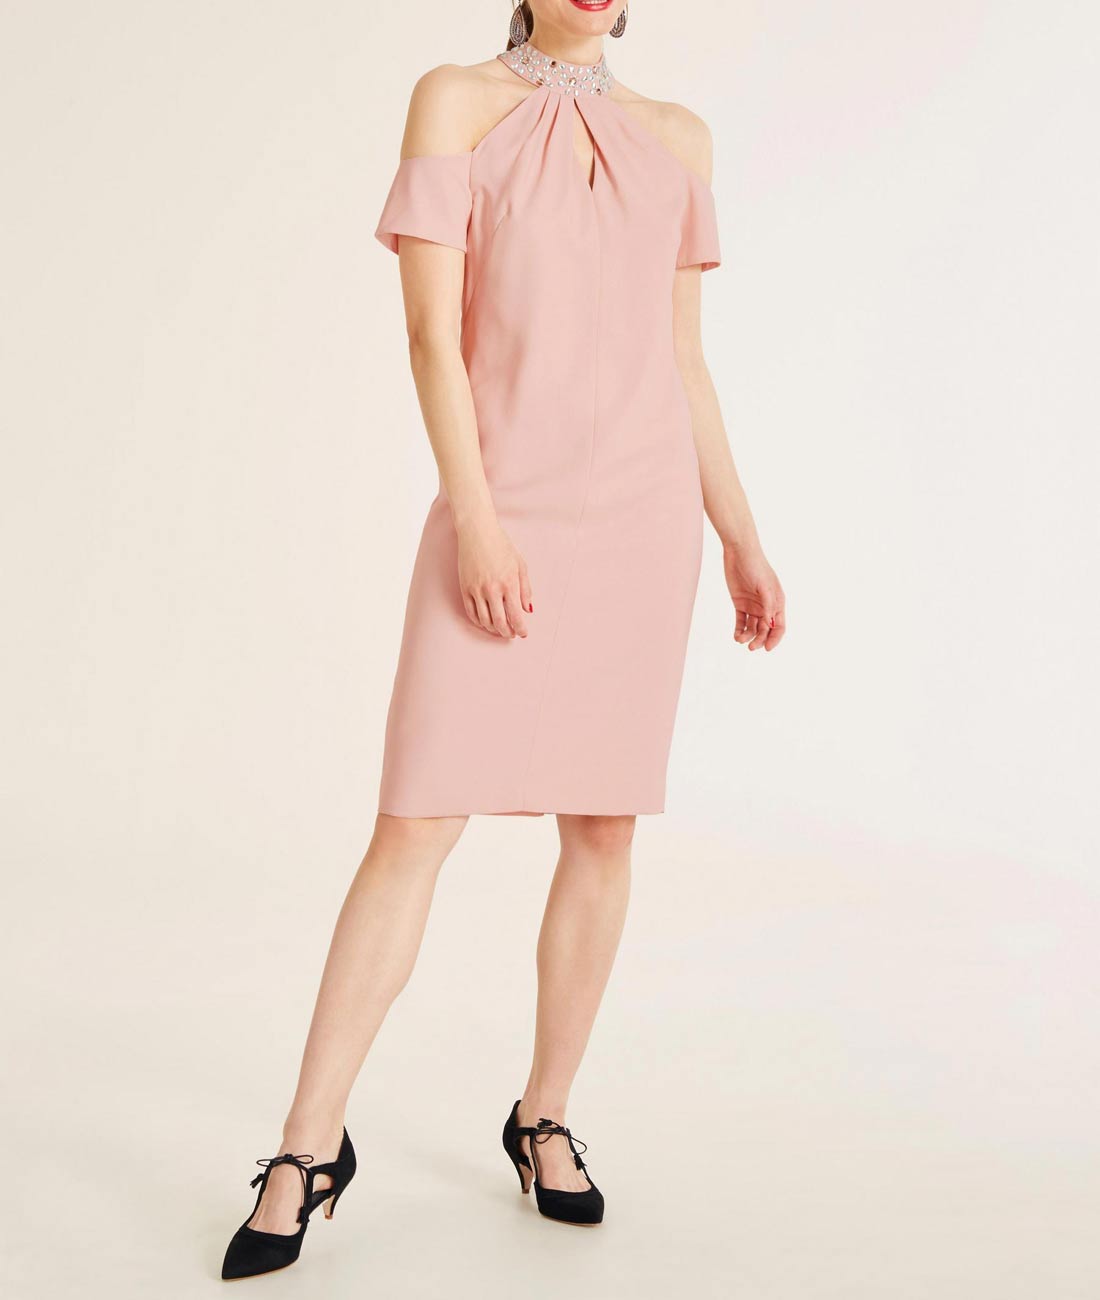 Ashley Brooke Damen Designer-Cocktailkleid, rosa